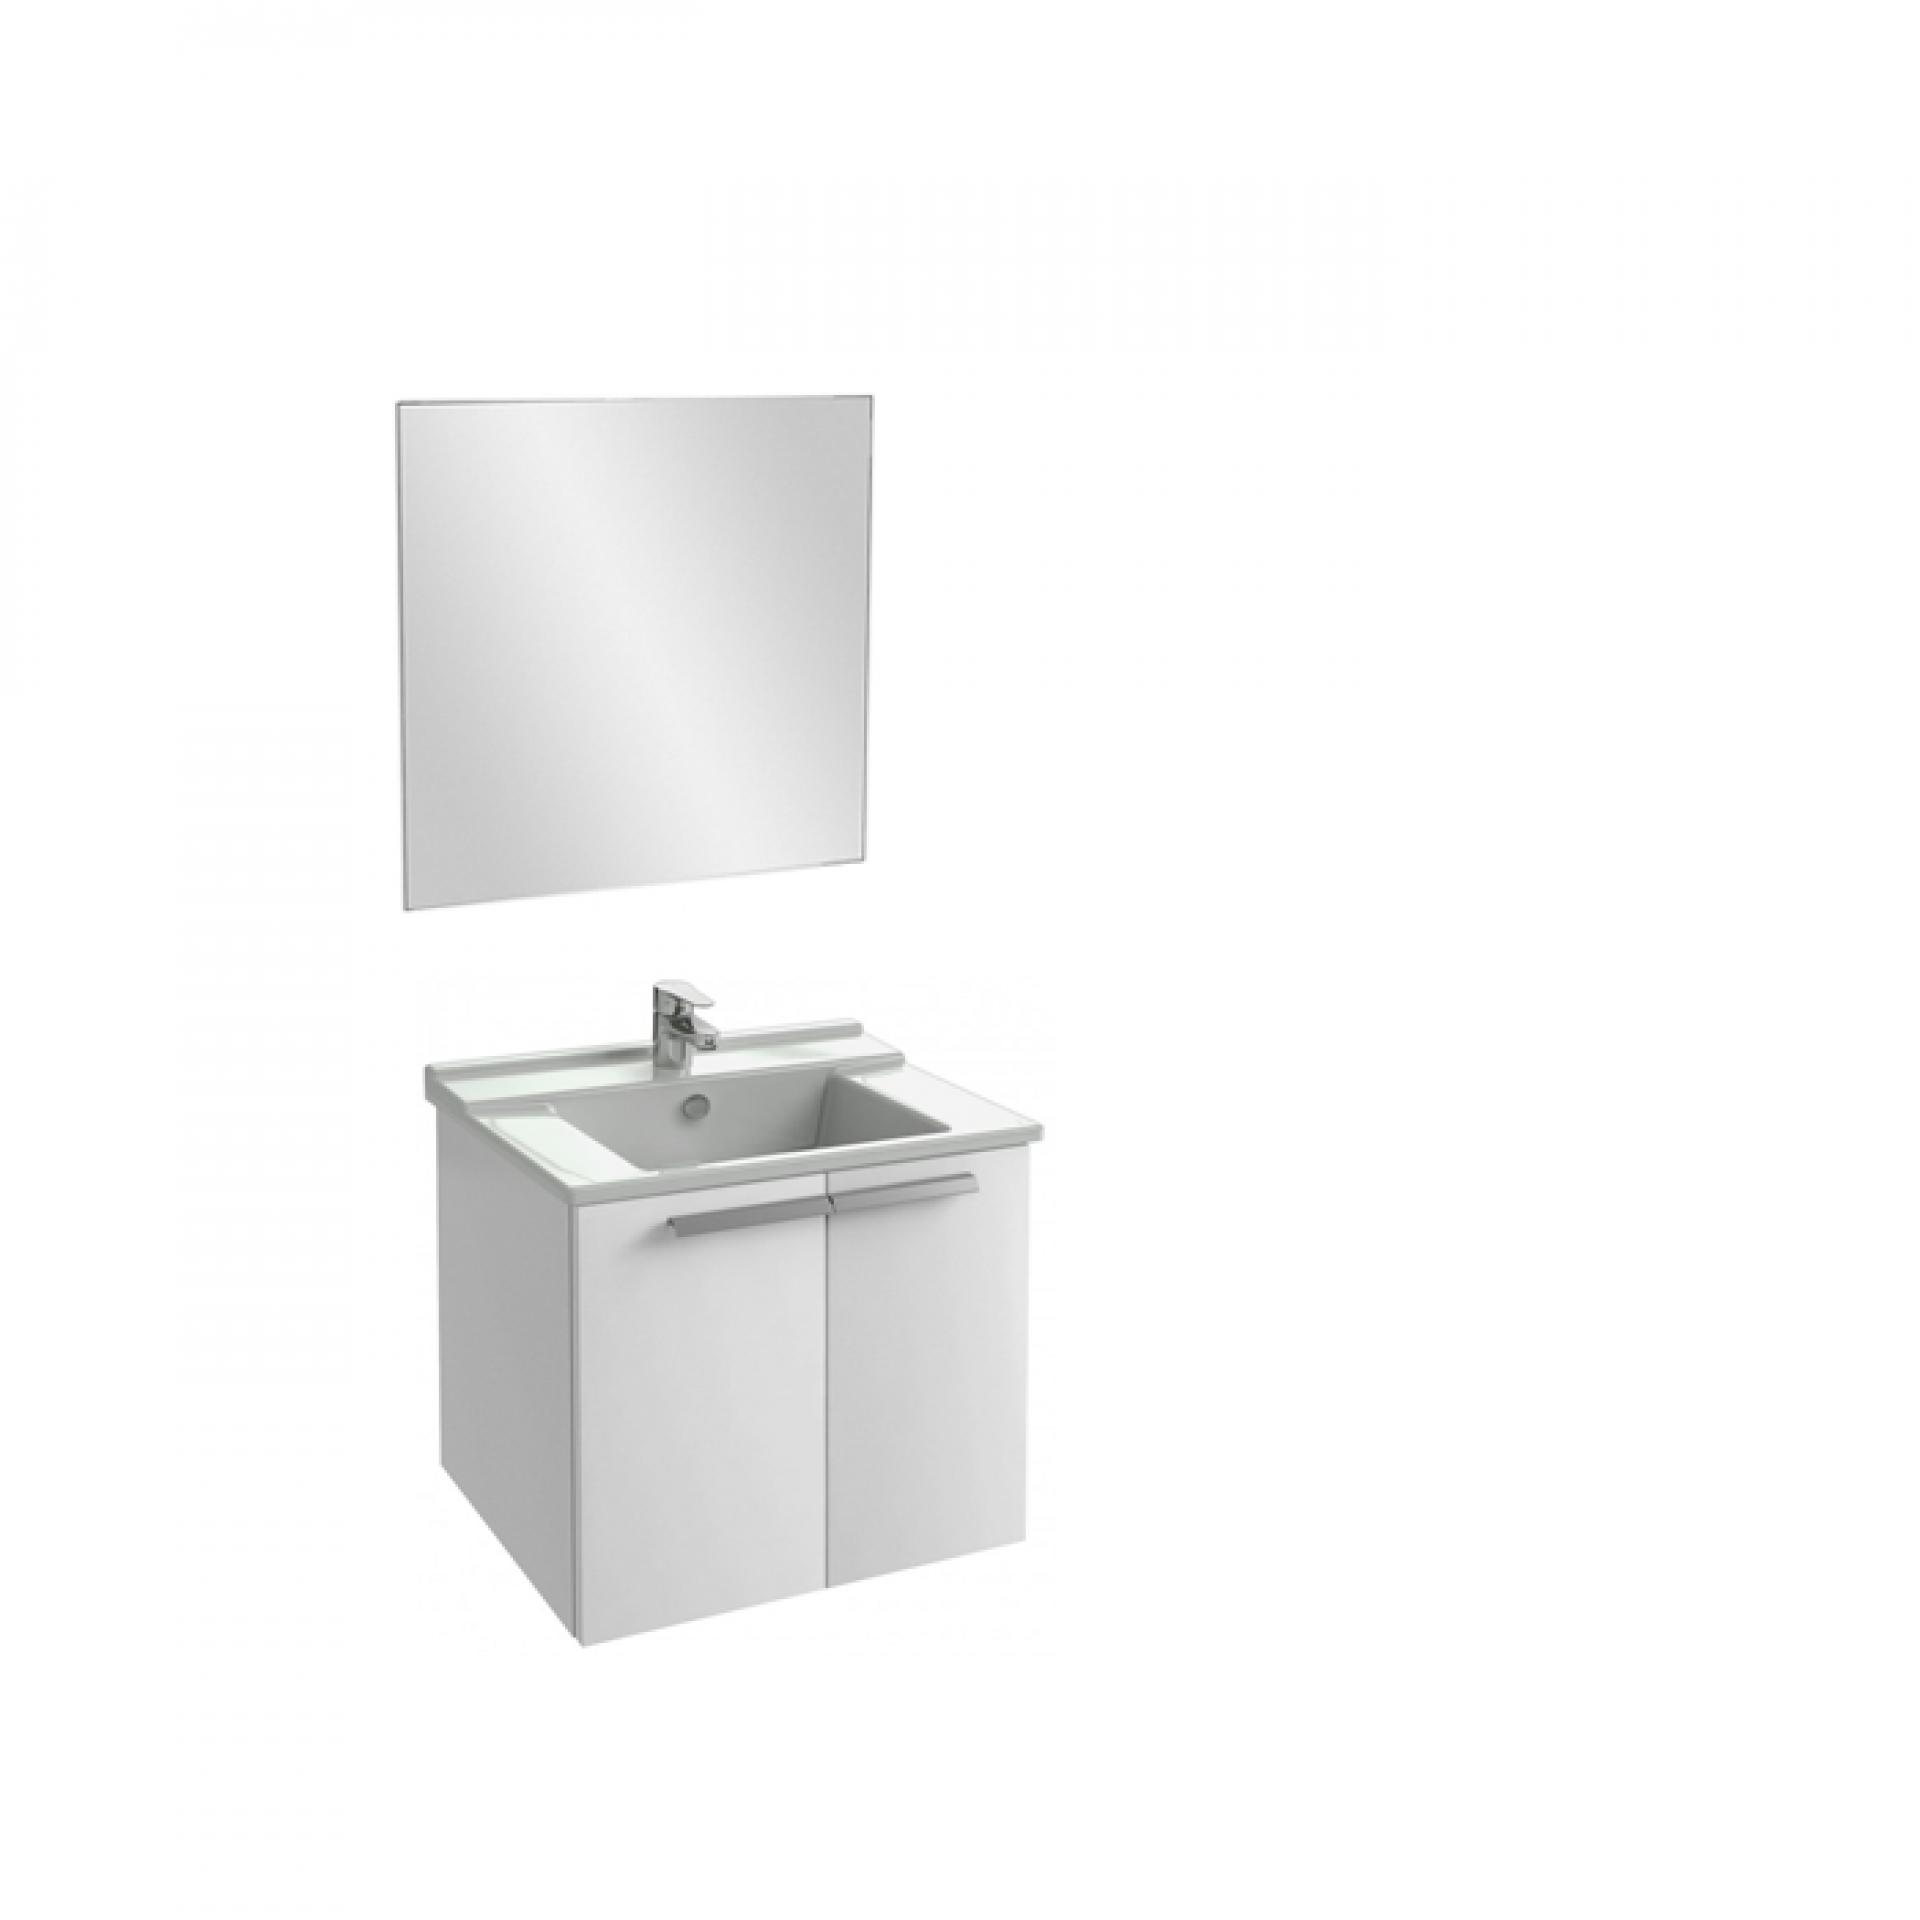 Комплект мебели 60 см Jacob Delafon Struktura с раковиной EXI112-00, тумбой EB1280-N18, зеркалом EB1080-NF, белый блестящий